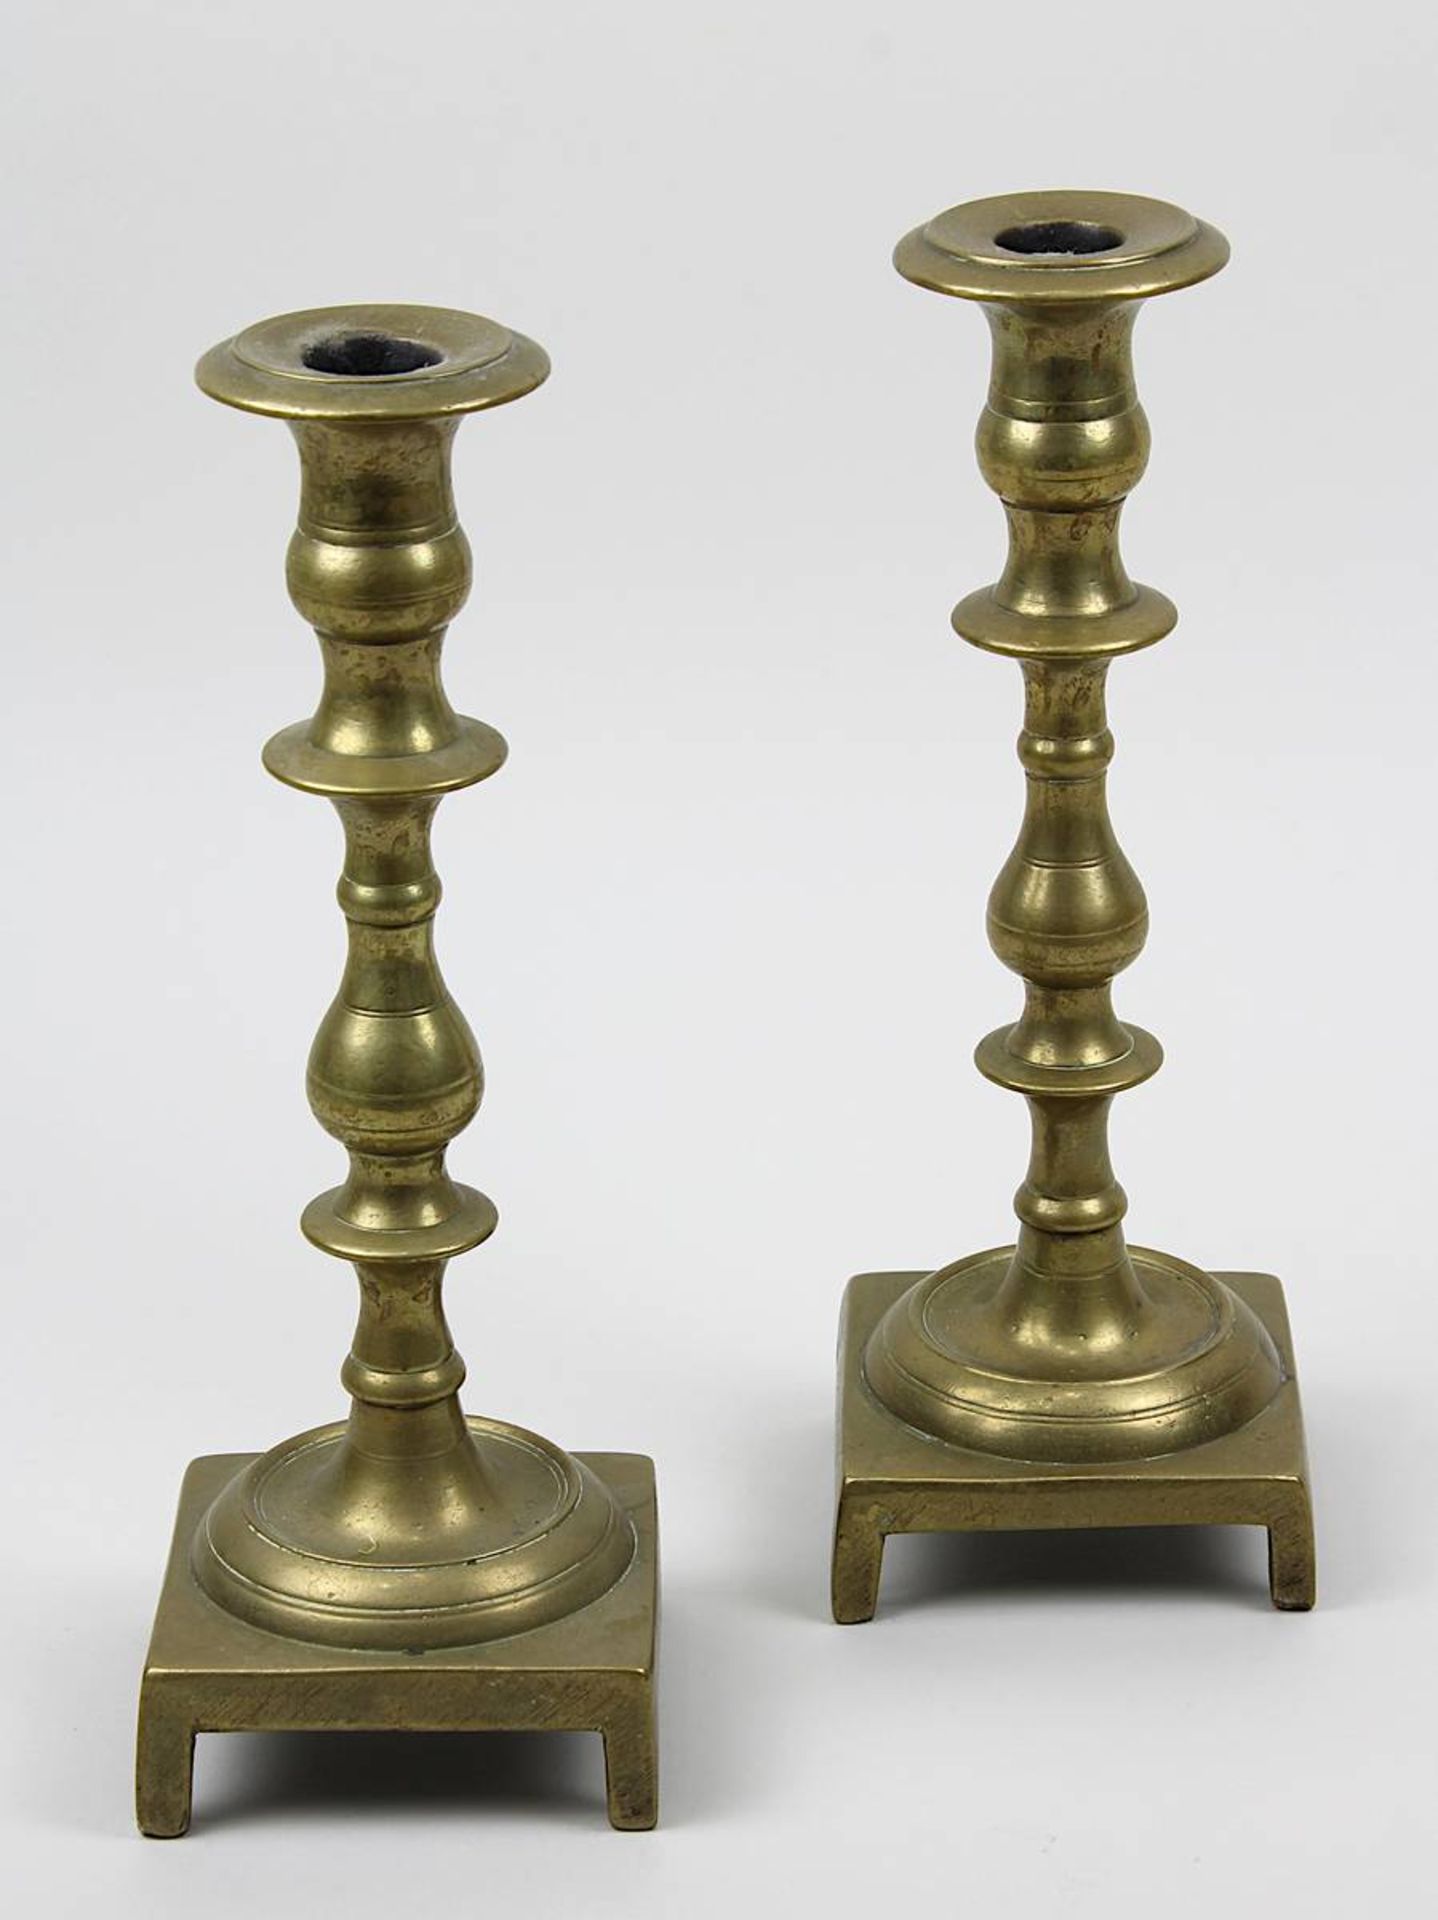 Paar bronzene Tischleuchter, Judaica um 1800, H je 26 cm, seit Generationen in jüdischem